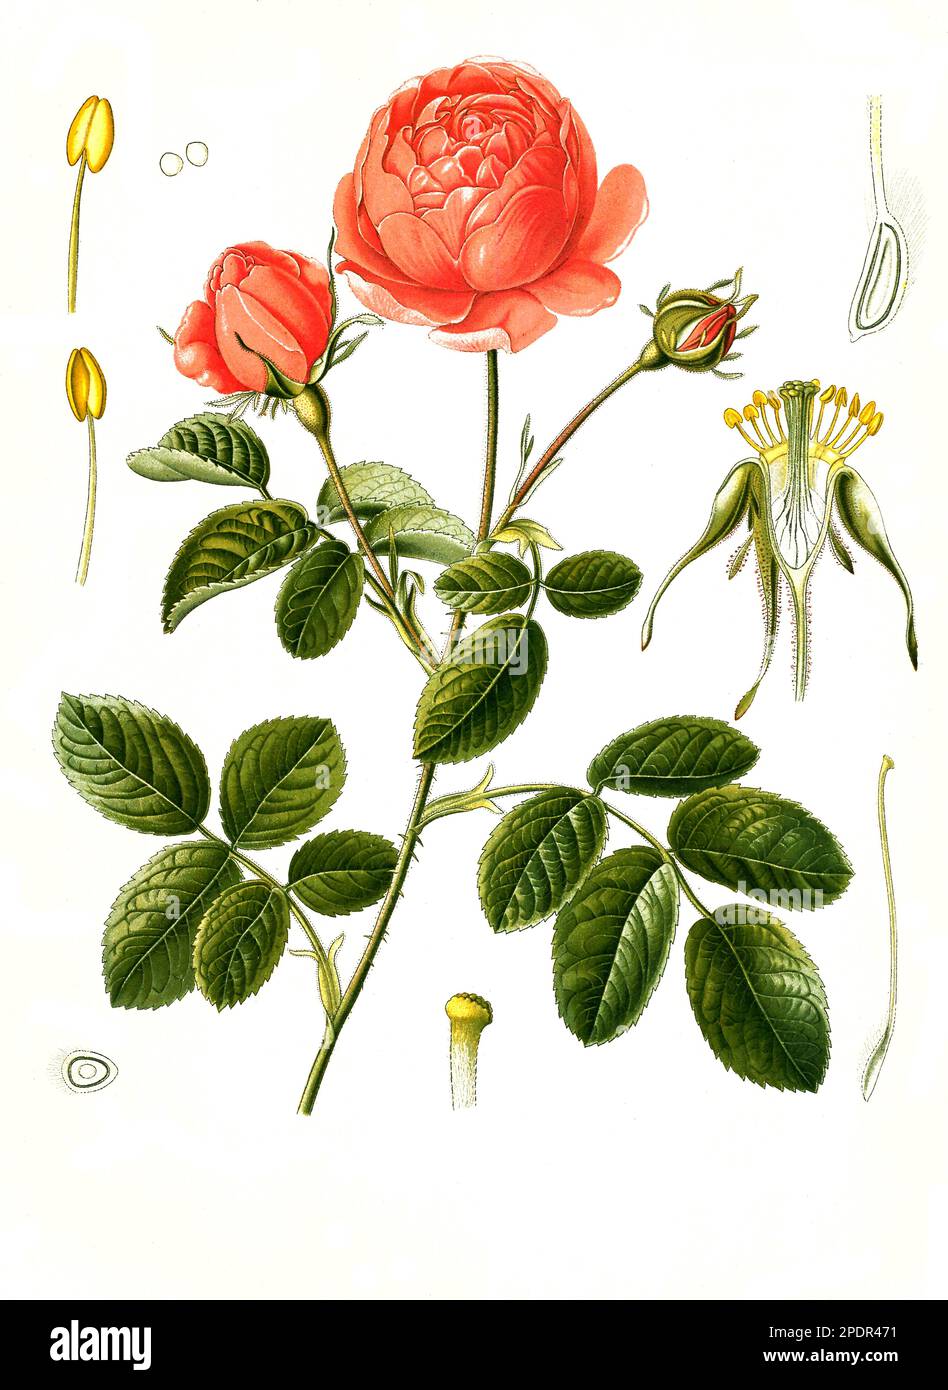 Heilpflanze, Rosa × centifolia, auch Zentifolie, eine Rosengruppe mit gefüllten Blüten, die zu den alten Rosen zählt, Historisch, digital restaurierte Reproduktion von einer Vorlage aus dem 19. Jahrhundert, Stock Photo